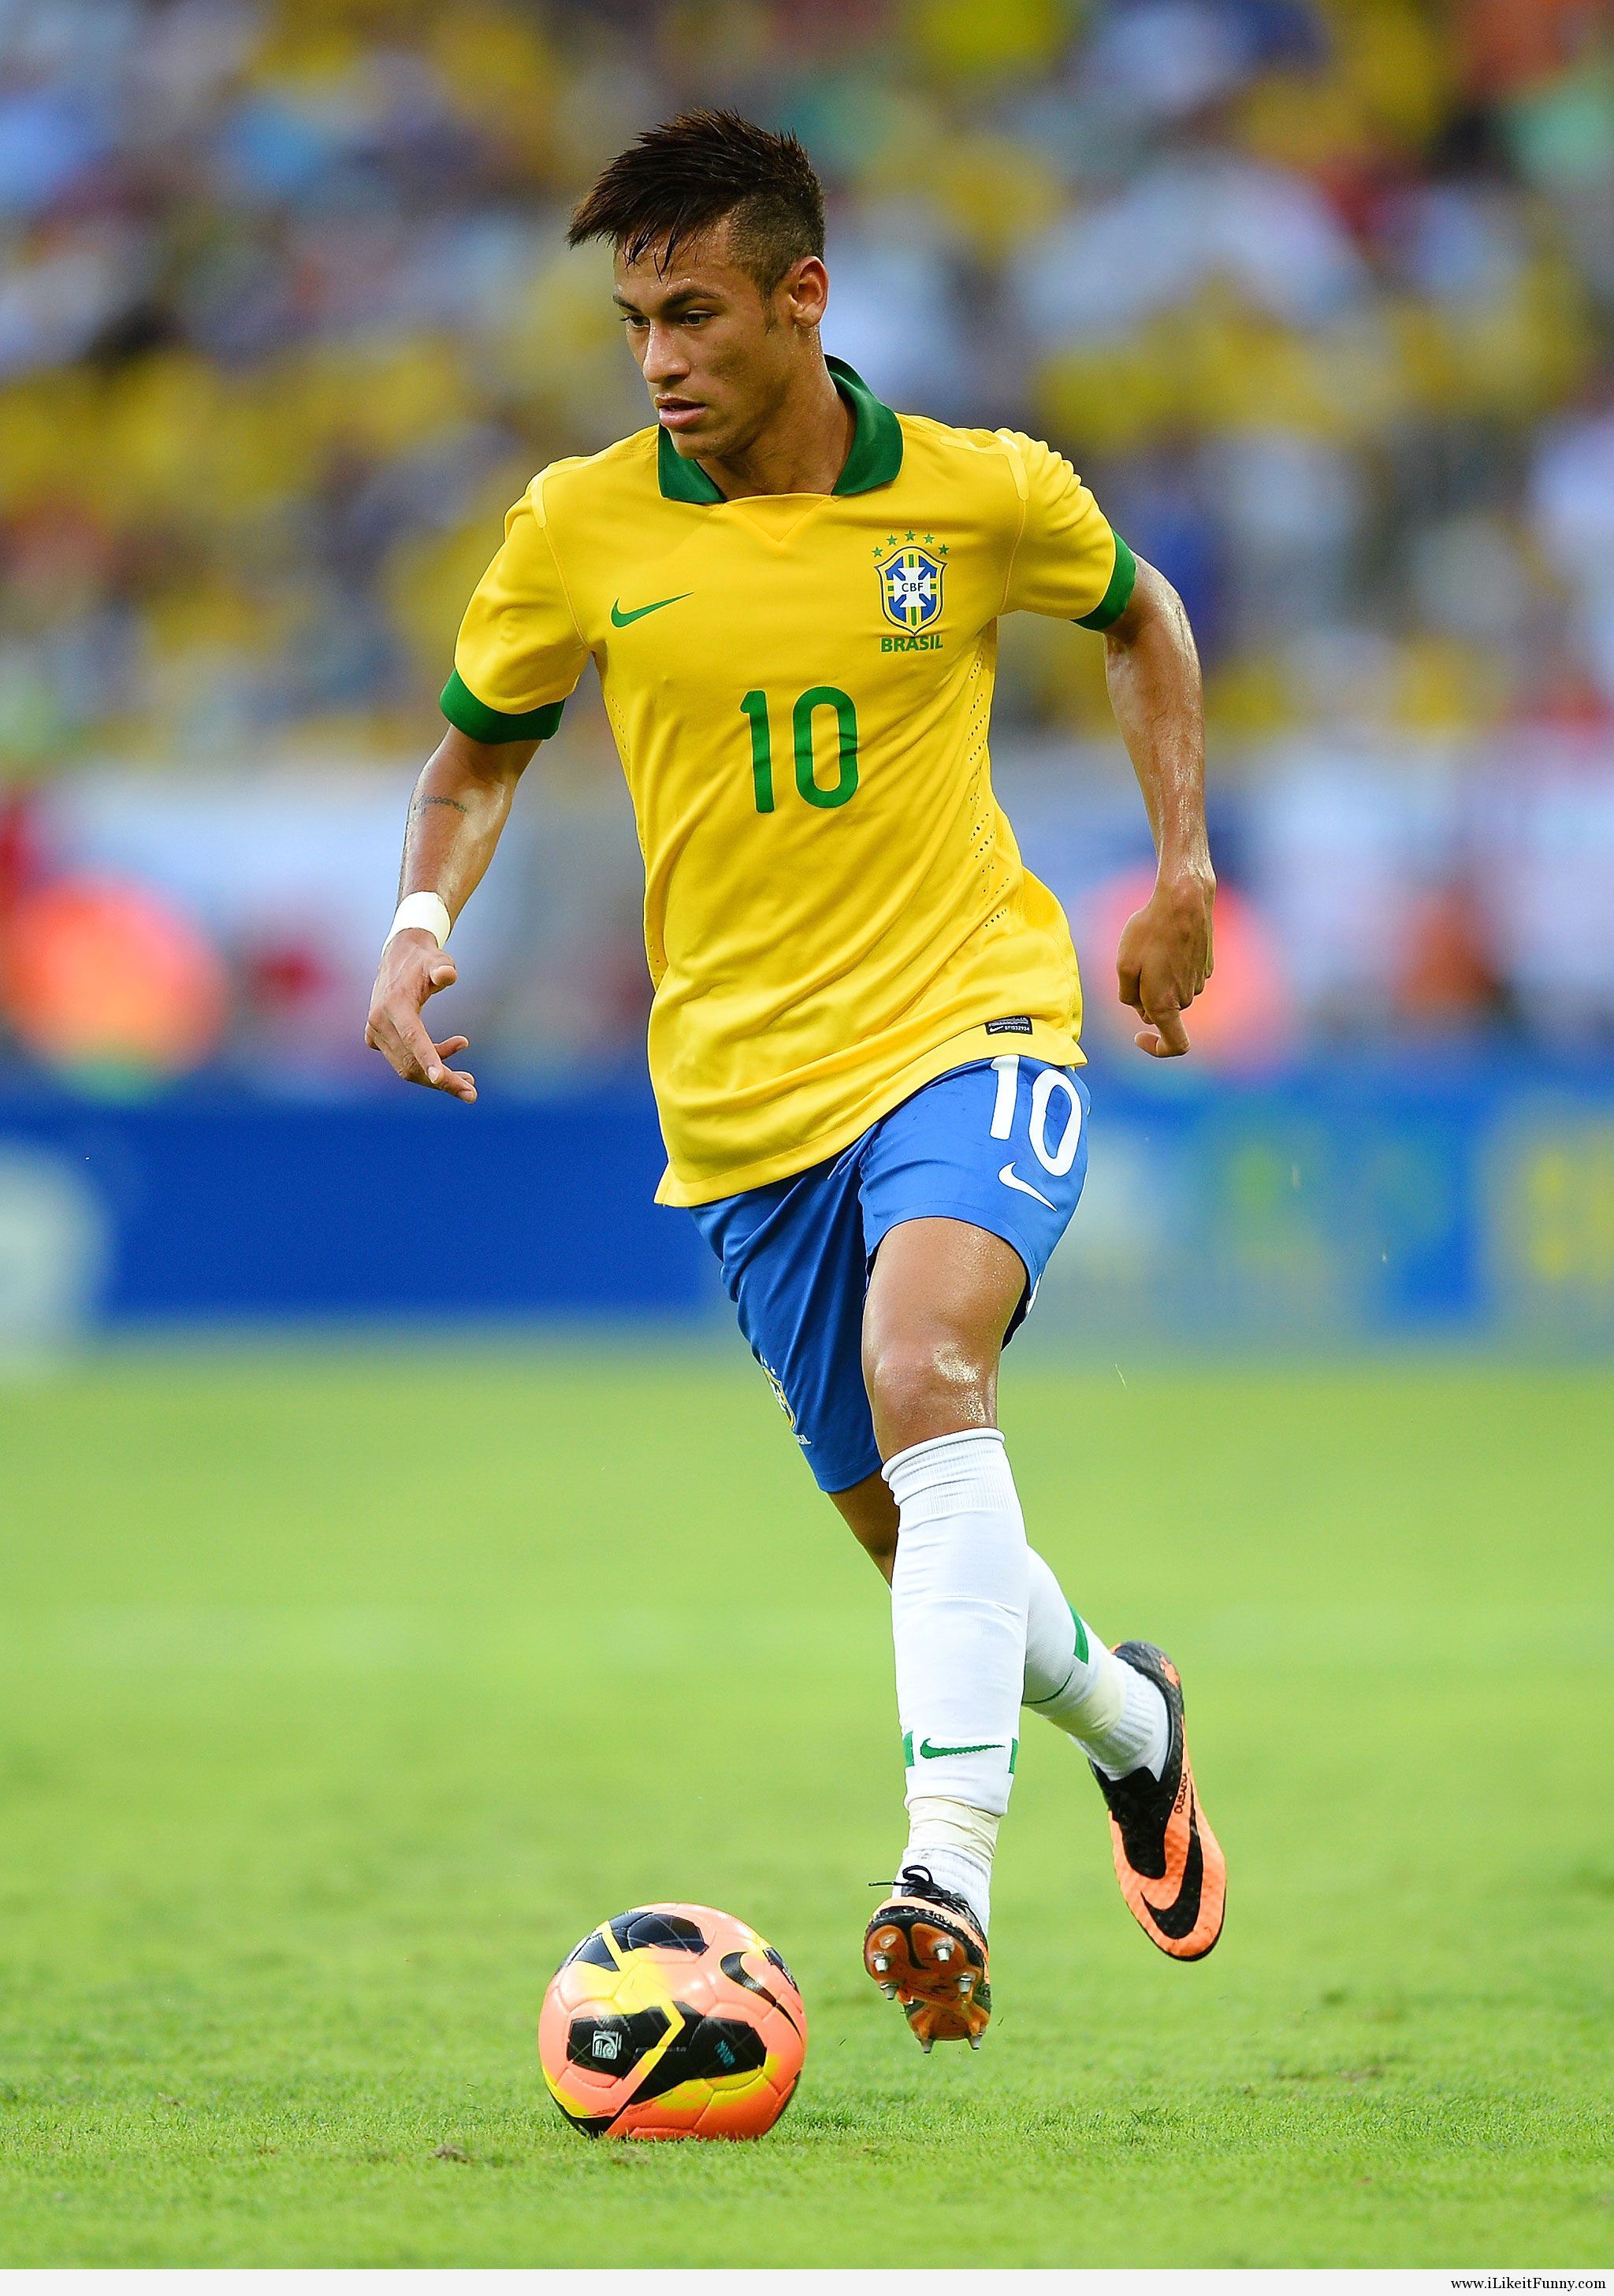 Các fan hâm mộ bóng đá đều biết đến Neymar và sự nổi tiếng của anh ta trên khắp thế giới. Với hình nền 3D của Neymar, bạn có thể trang trí điện thoại hoặc máy tính của mình với hình ảnh từ các kho đồ sộ của chúng tôi. Hãy chiêm ngưỡng những thiết kế tuyệt đẹp với Neymar 3D.